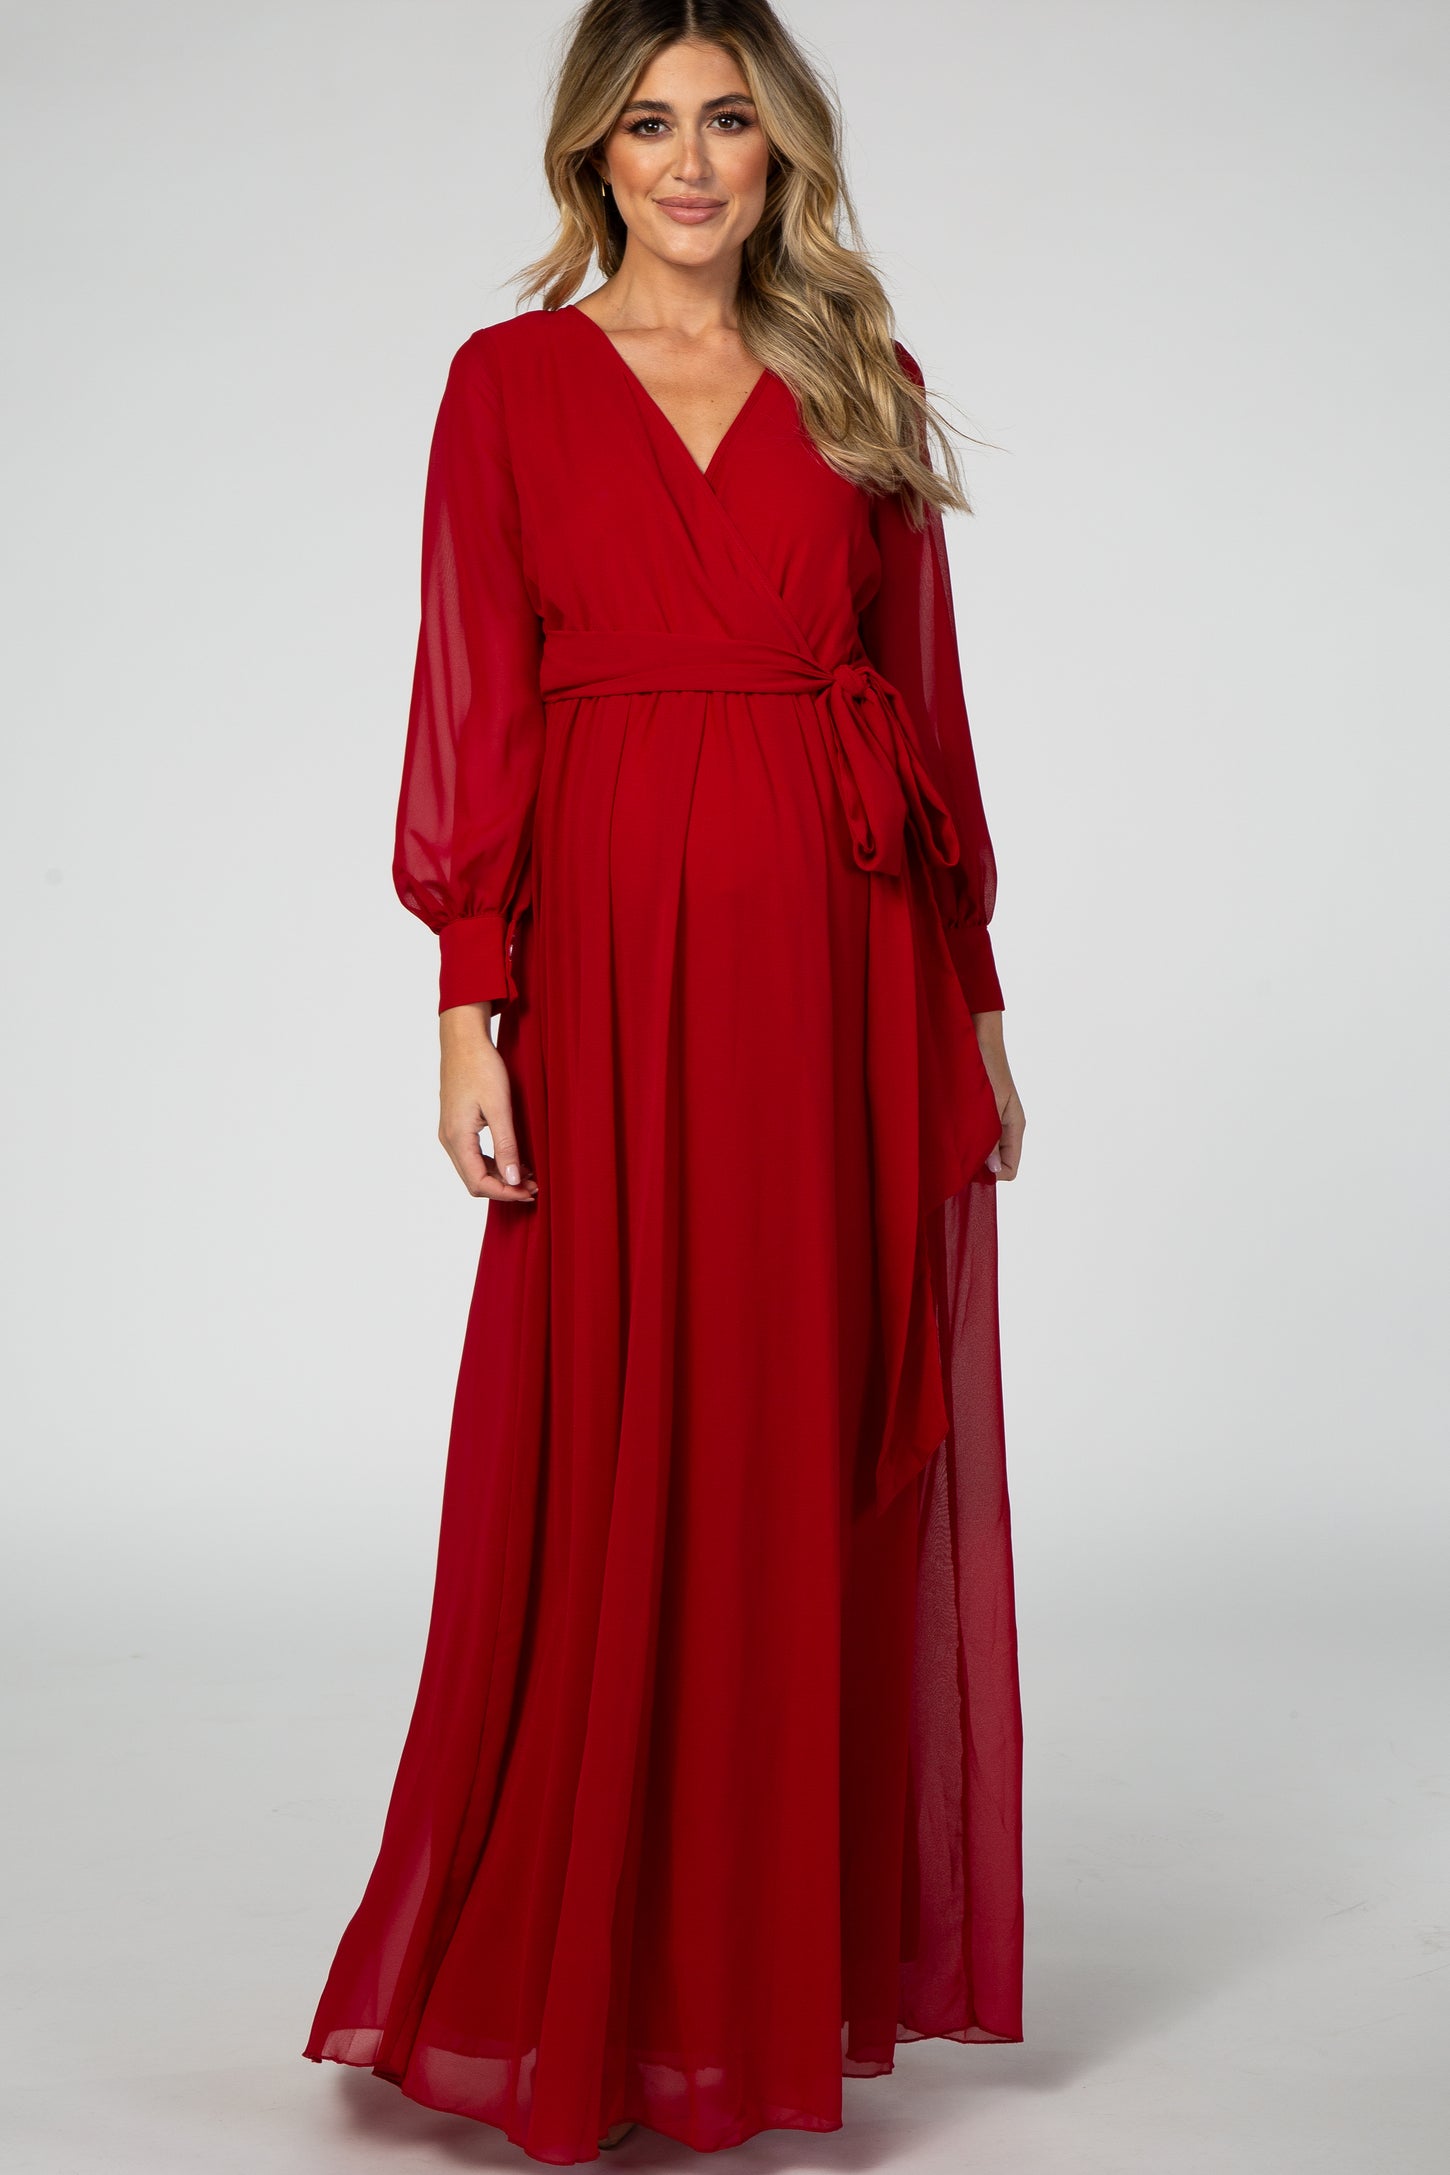 Red Chiffon Long Sleeve Pleated Maternity Maxi Dress– PinkBlush